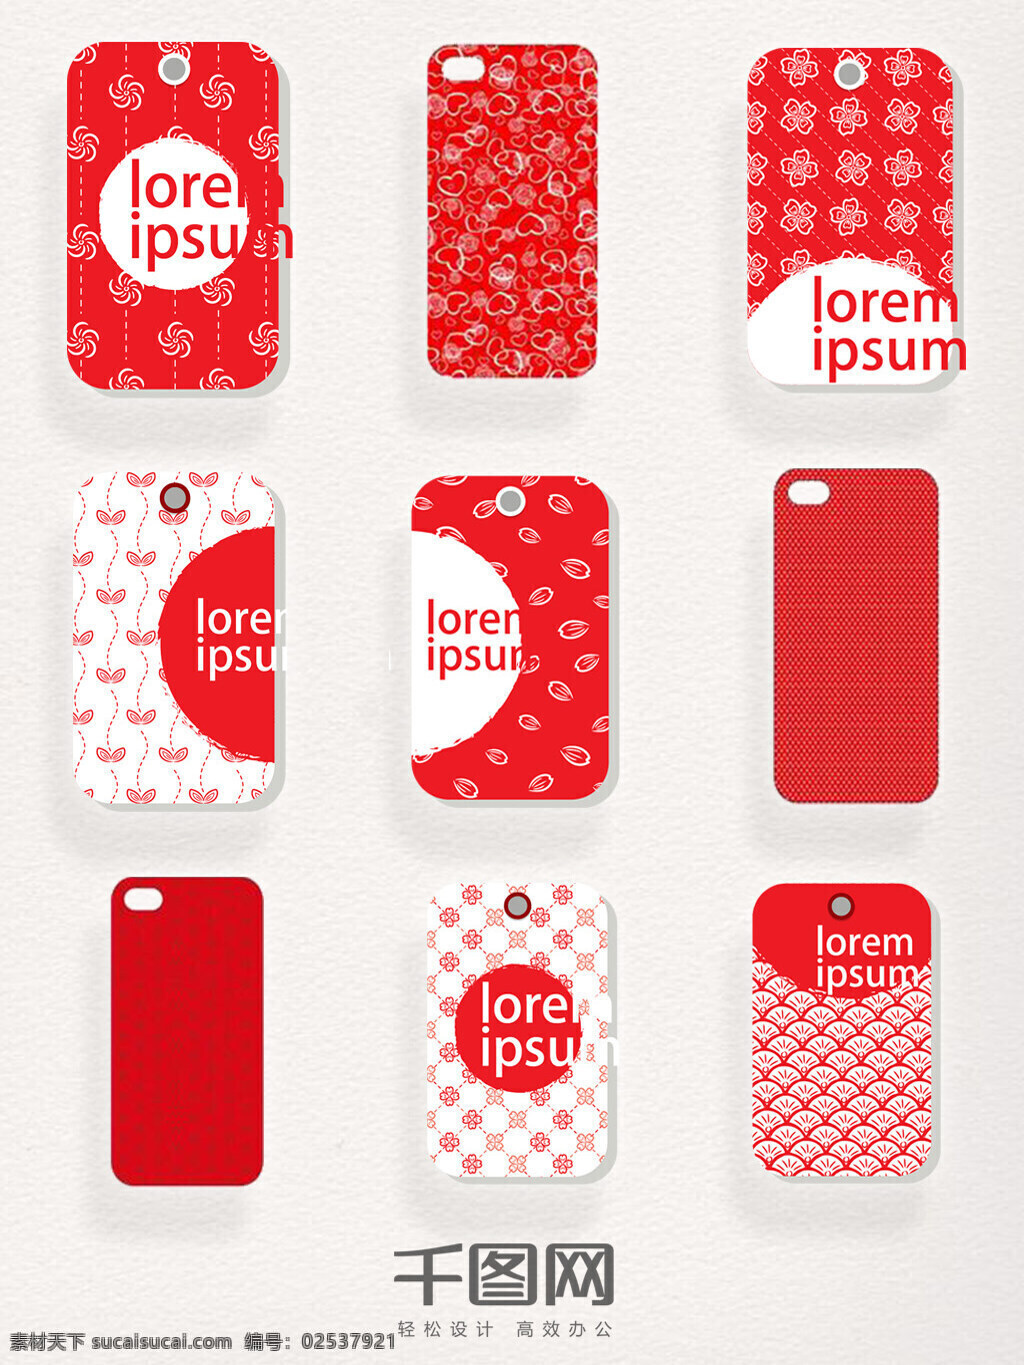 红色 中 国风 字母 手机壳 装饰 图案 纹理 中国风 简约 清新 手机后盖 装饰图案 高清 元素